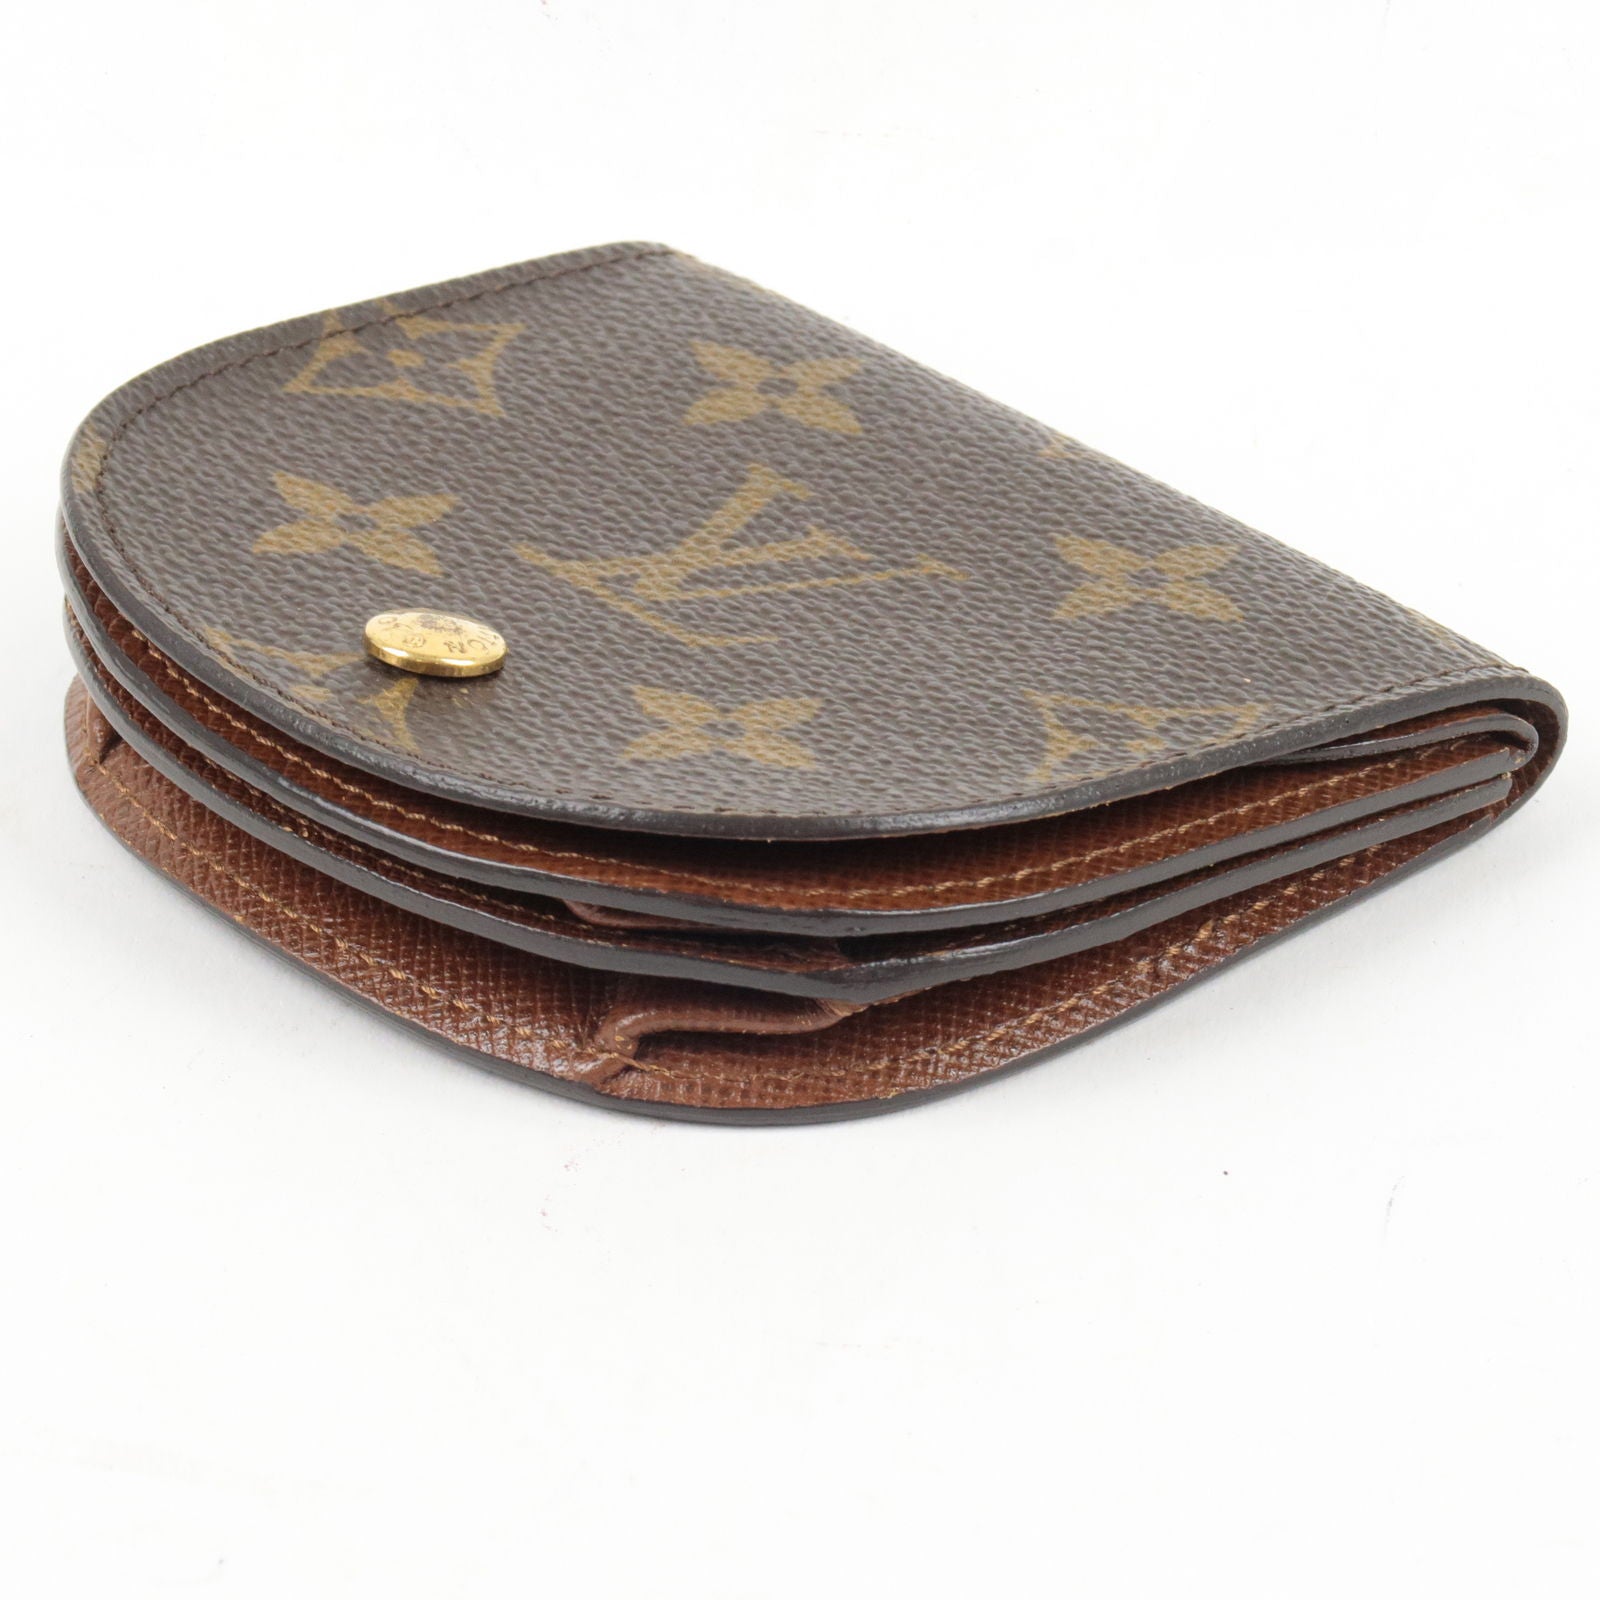 Empty Louis Vuitton antique wallet case